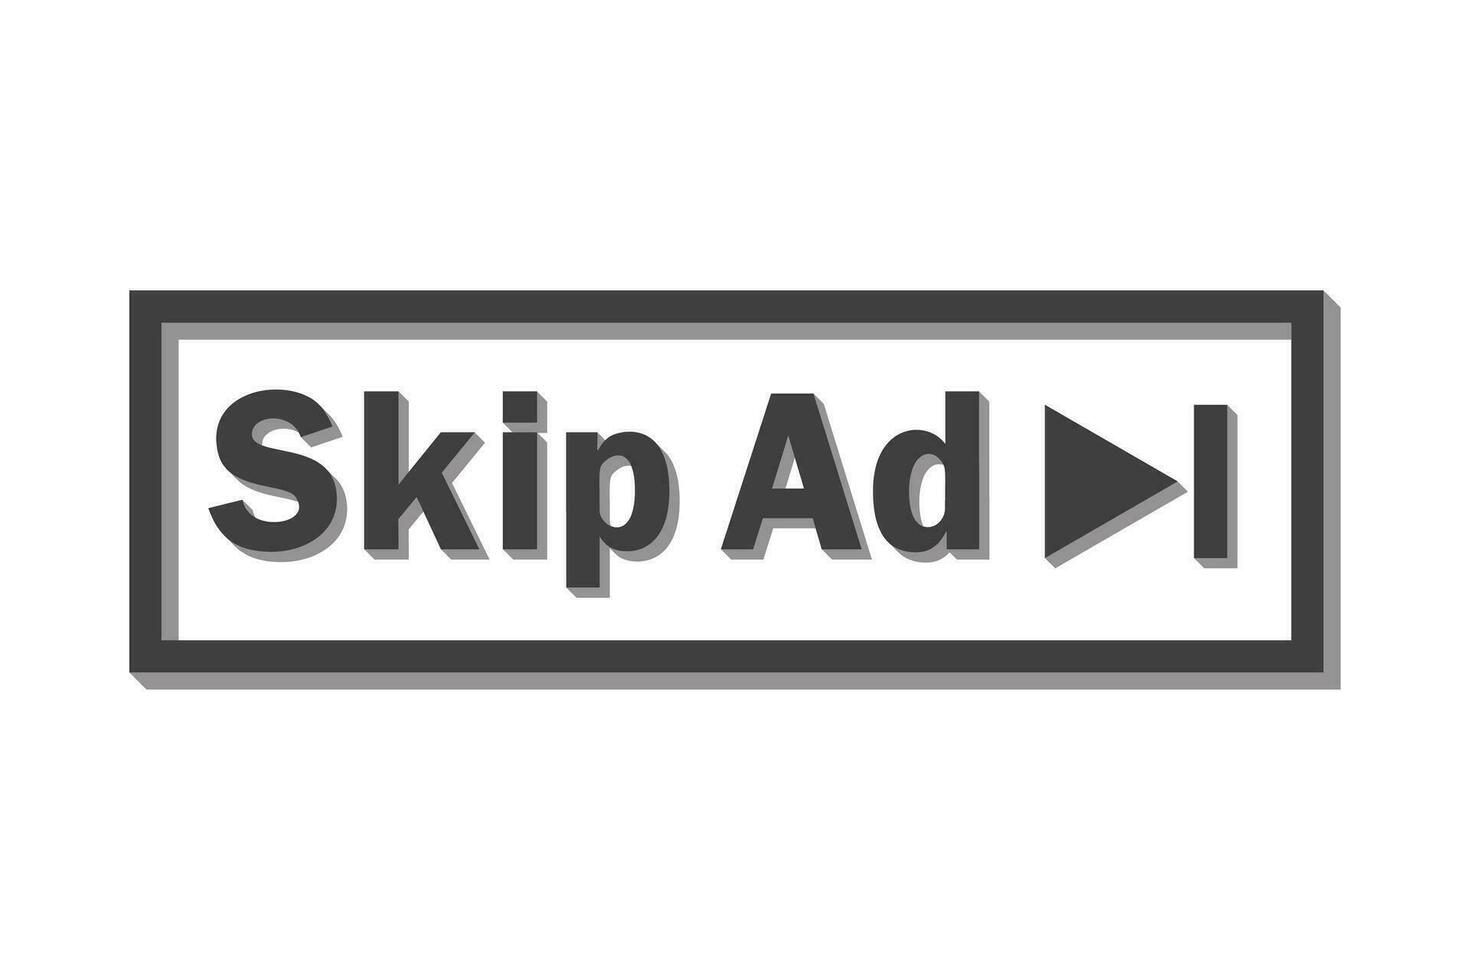 omitir anuncio botón. vídeo bloquear icono para publicidad. aplicación modelo para interfaz. vector